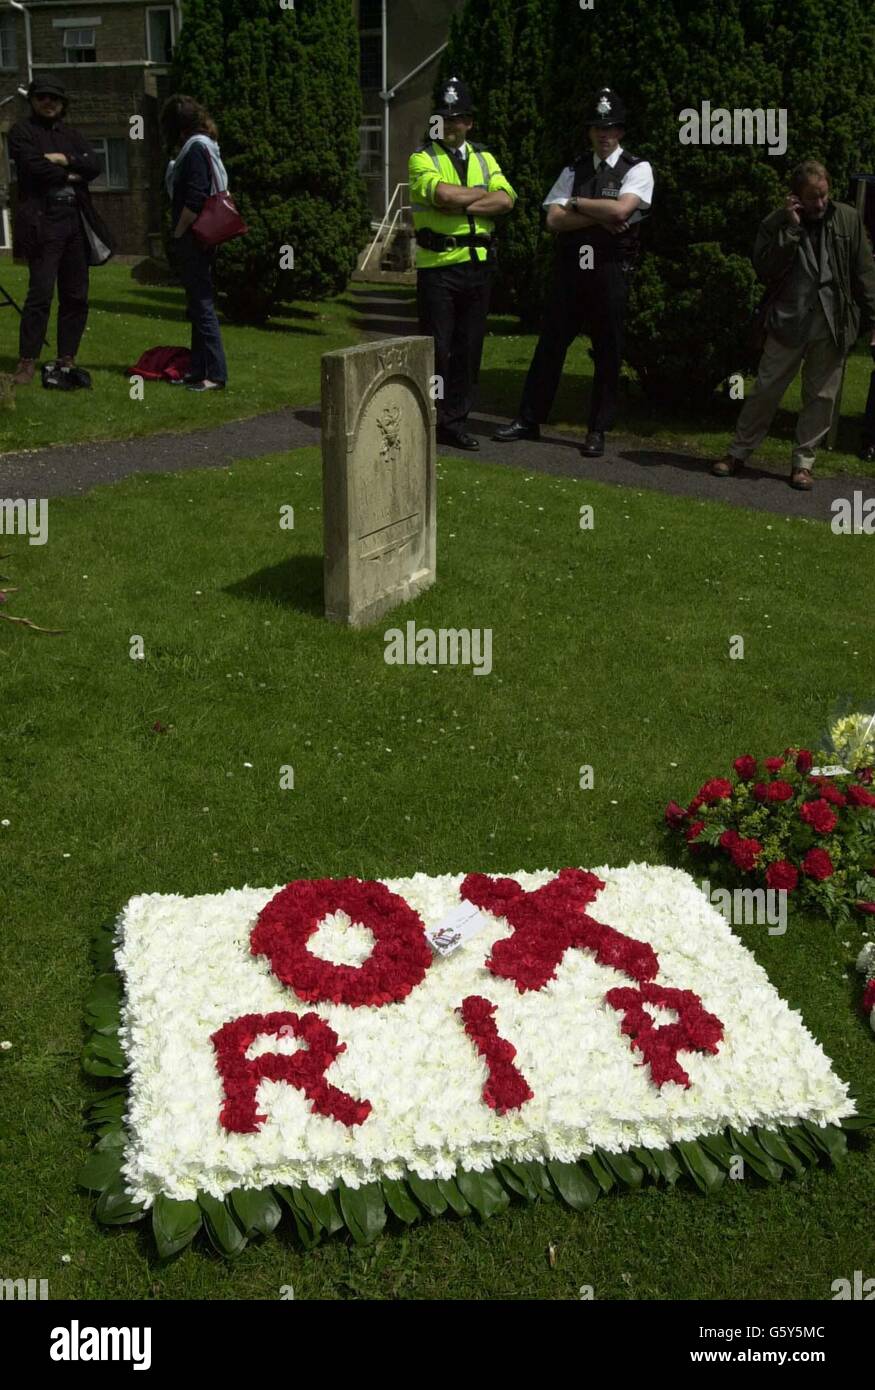 Liverpool FC funérailles fleurs lettres tombe cimetière Floral hommage tout mot